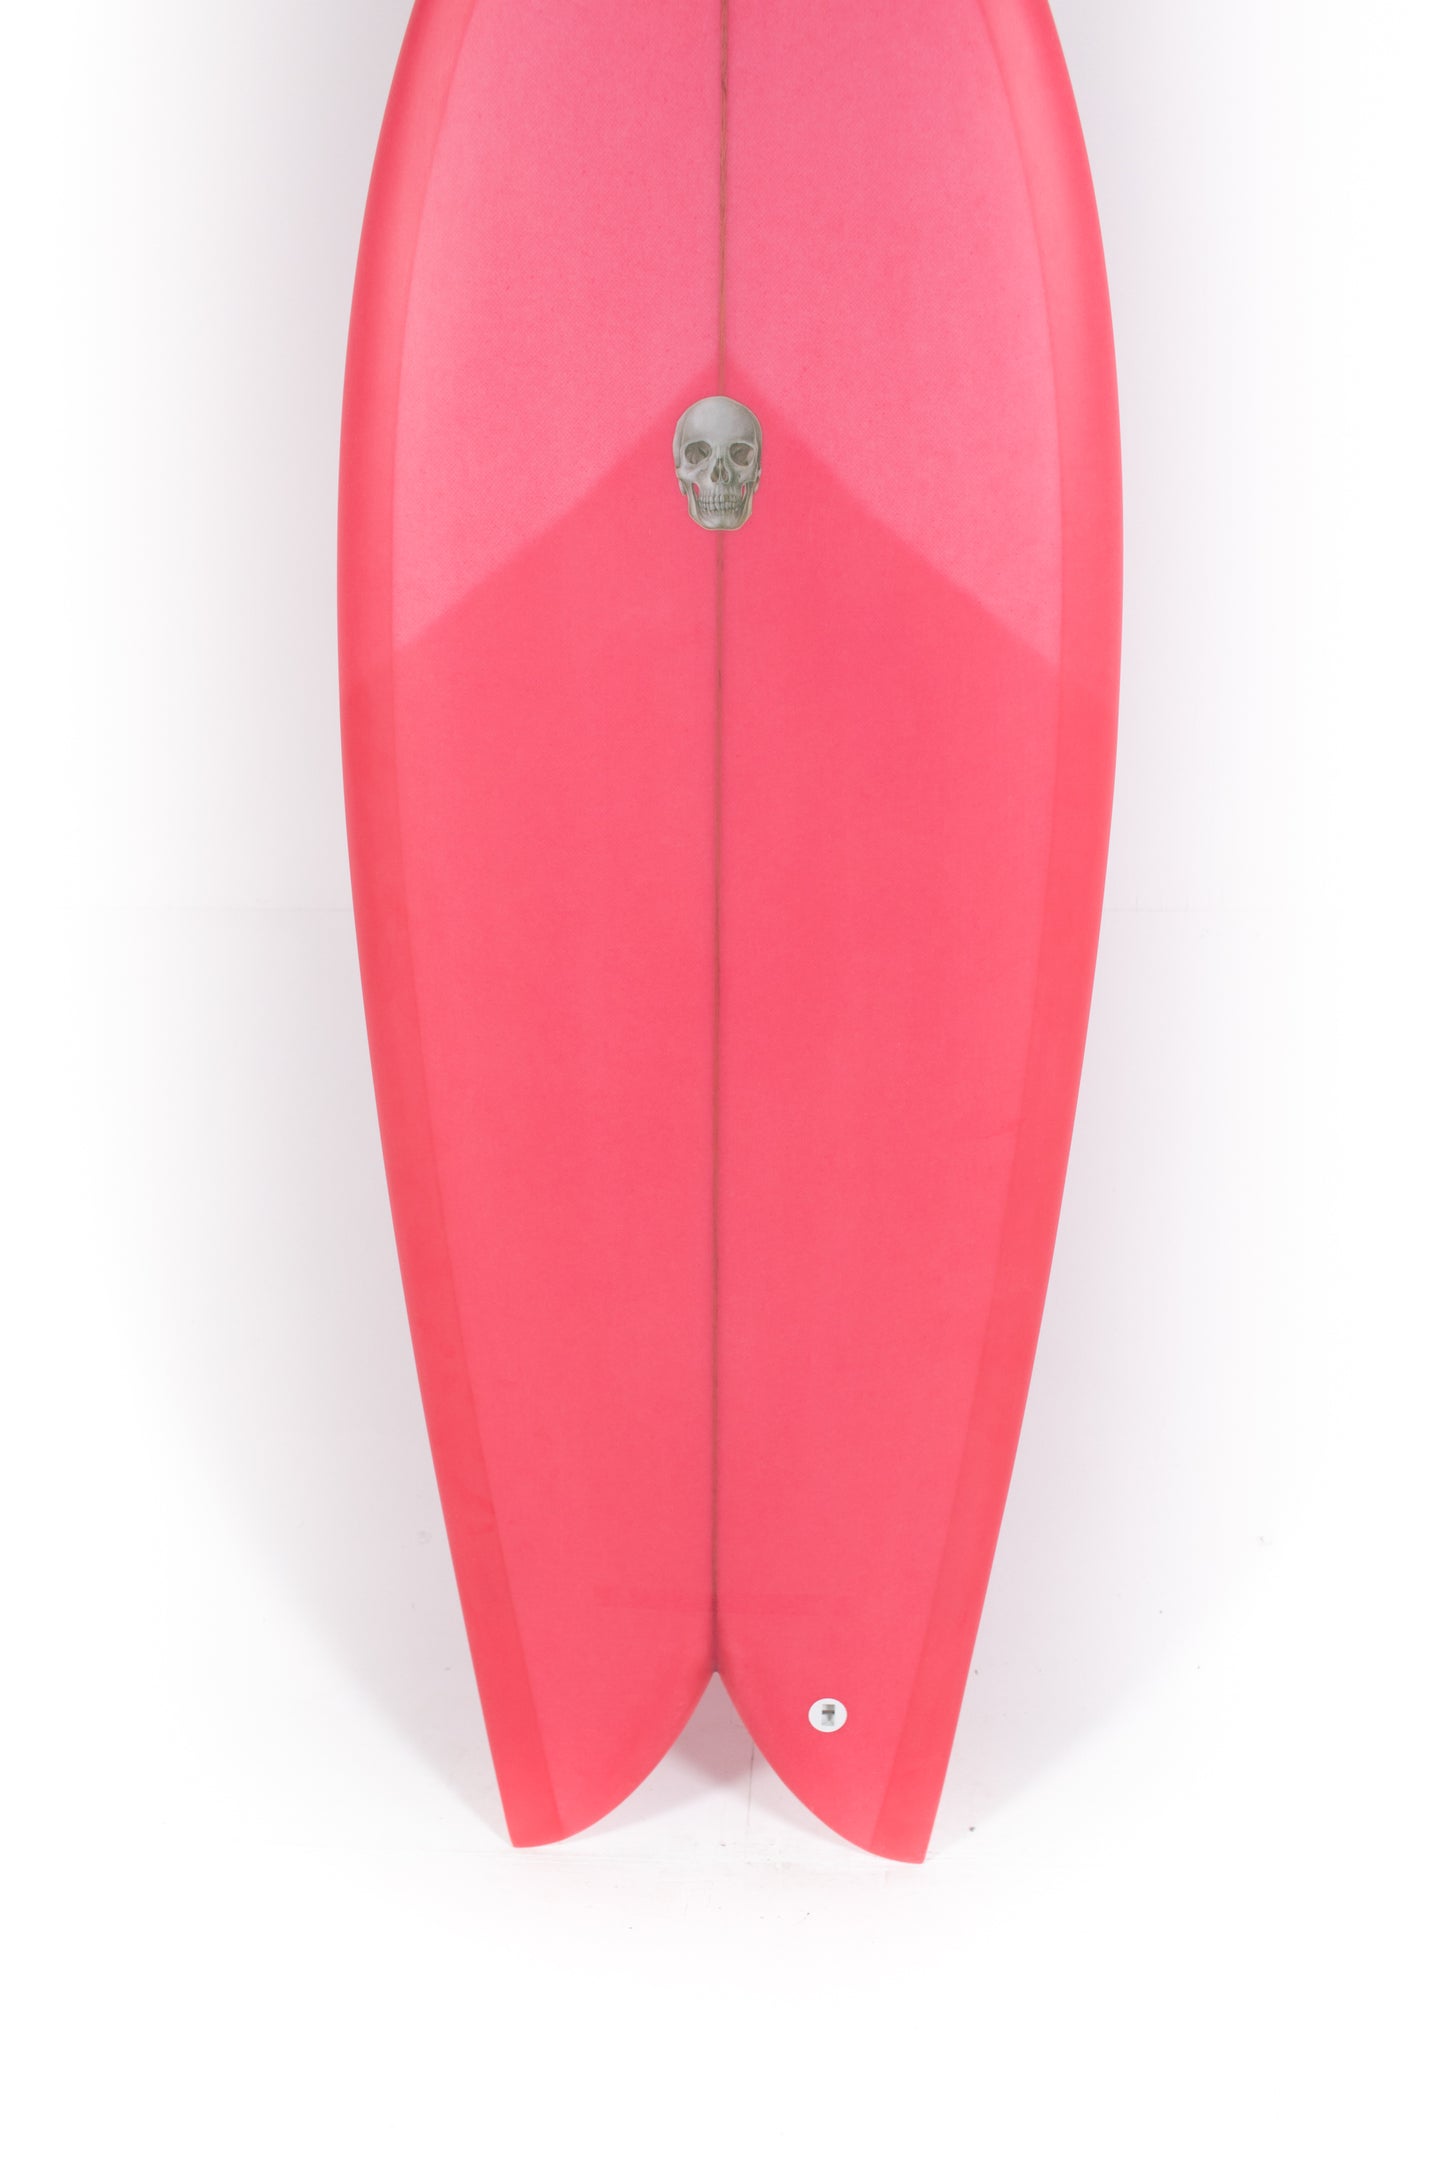 
                  
                    Pukas Surf Shop - Christenson Surfboards - CHRIS FISH - 5'2" x 20 1/2 x 2 5/16 - CX05003
                  
                